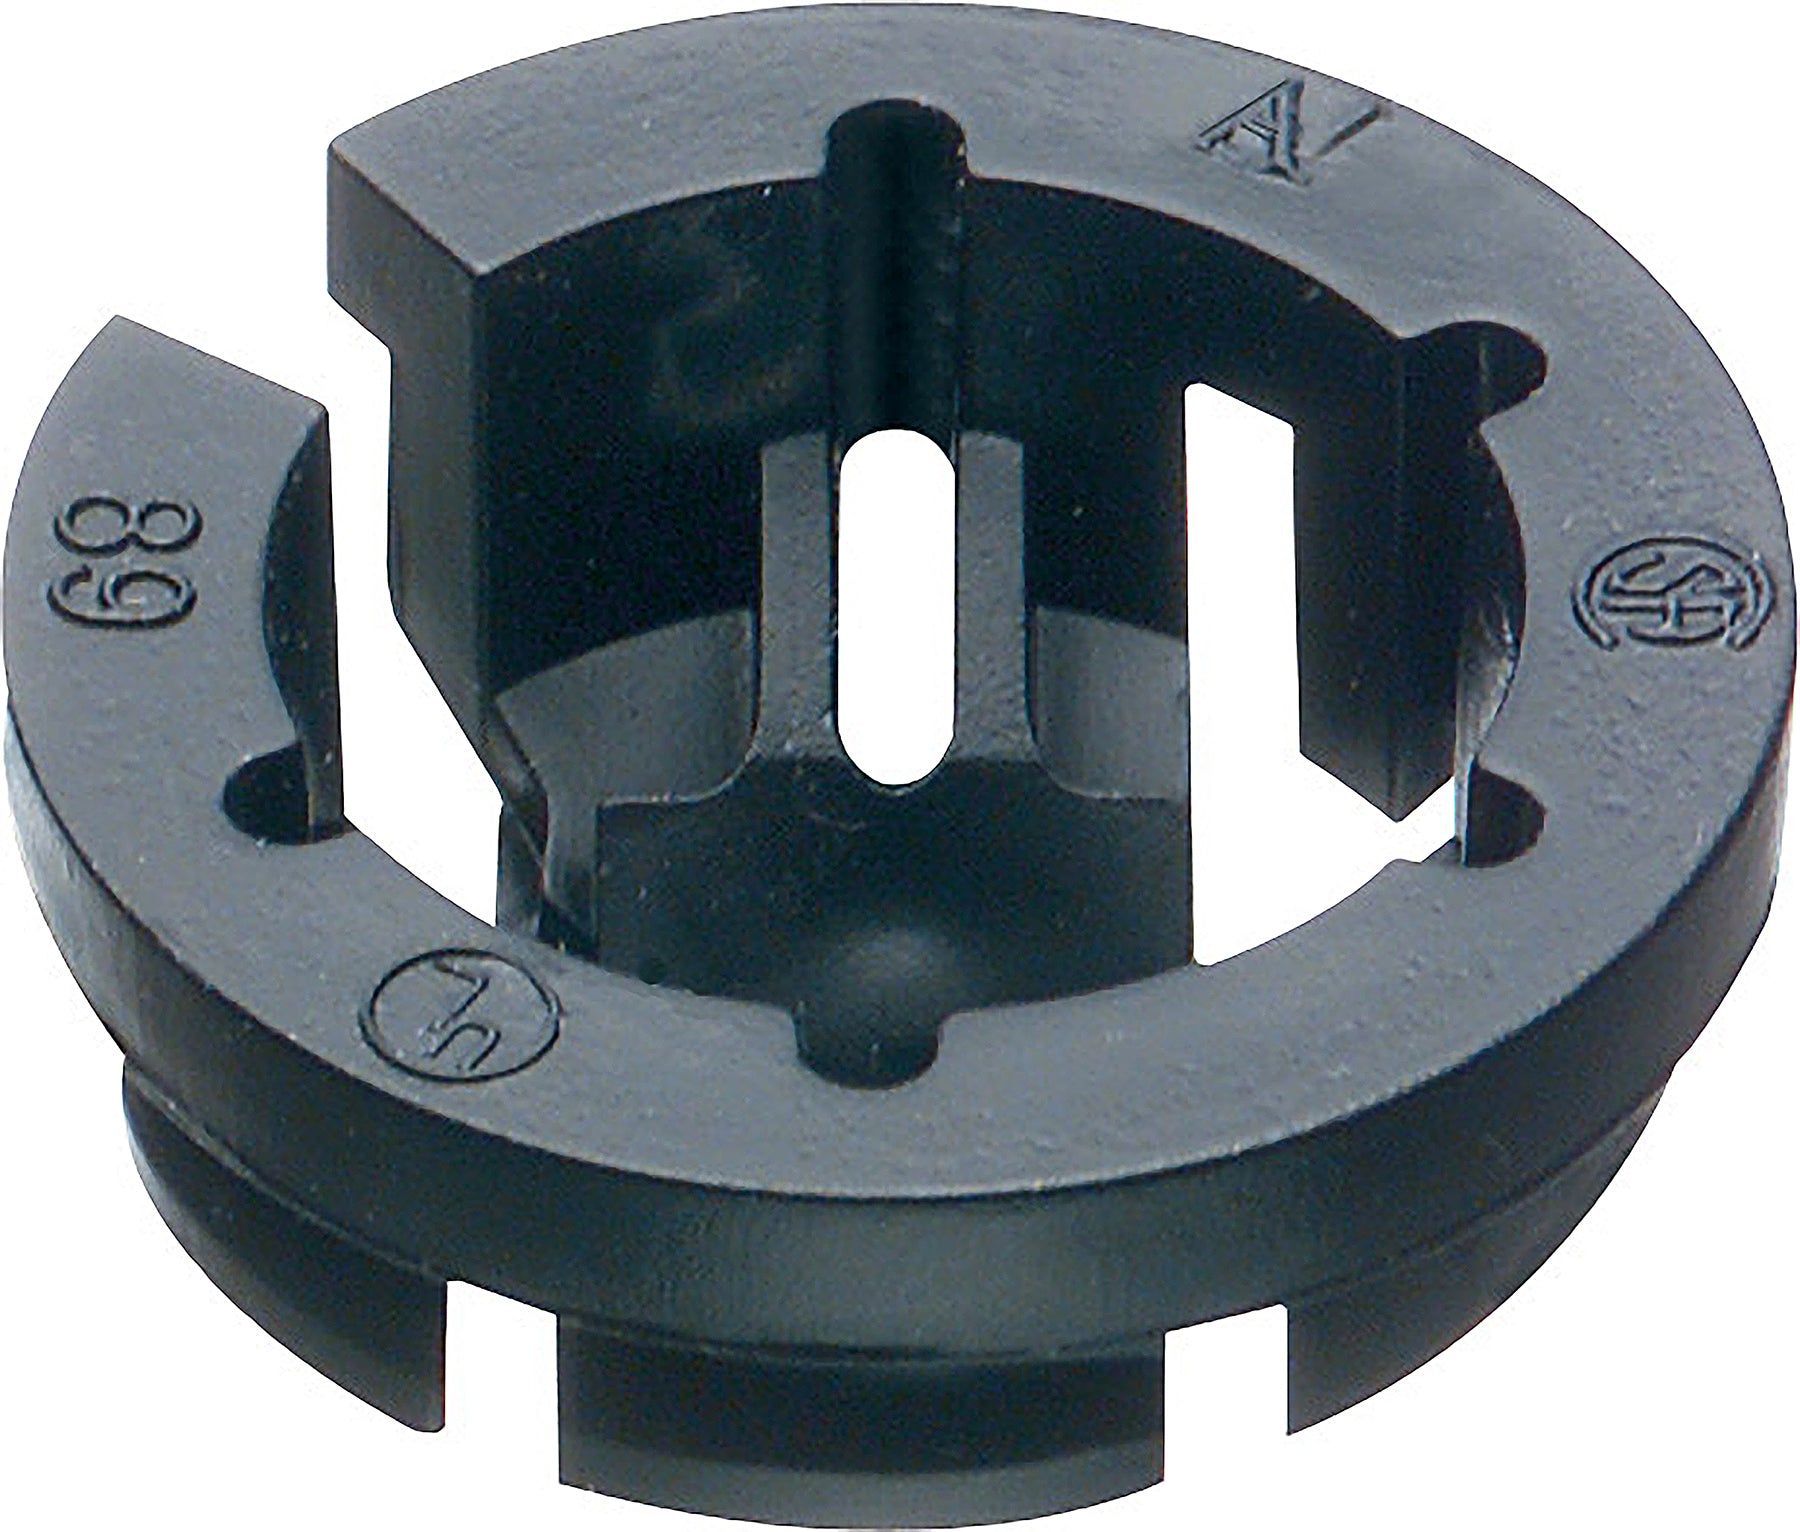 Arlington NM94 Black Button™ Non-Metallic Push-In Connector, Box of 250